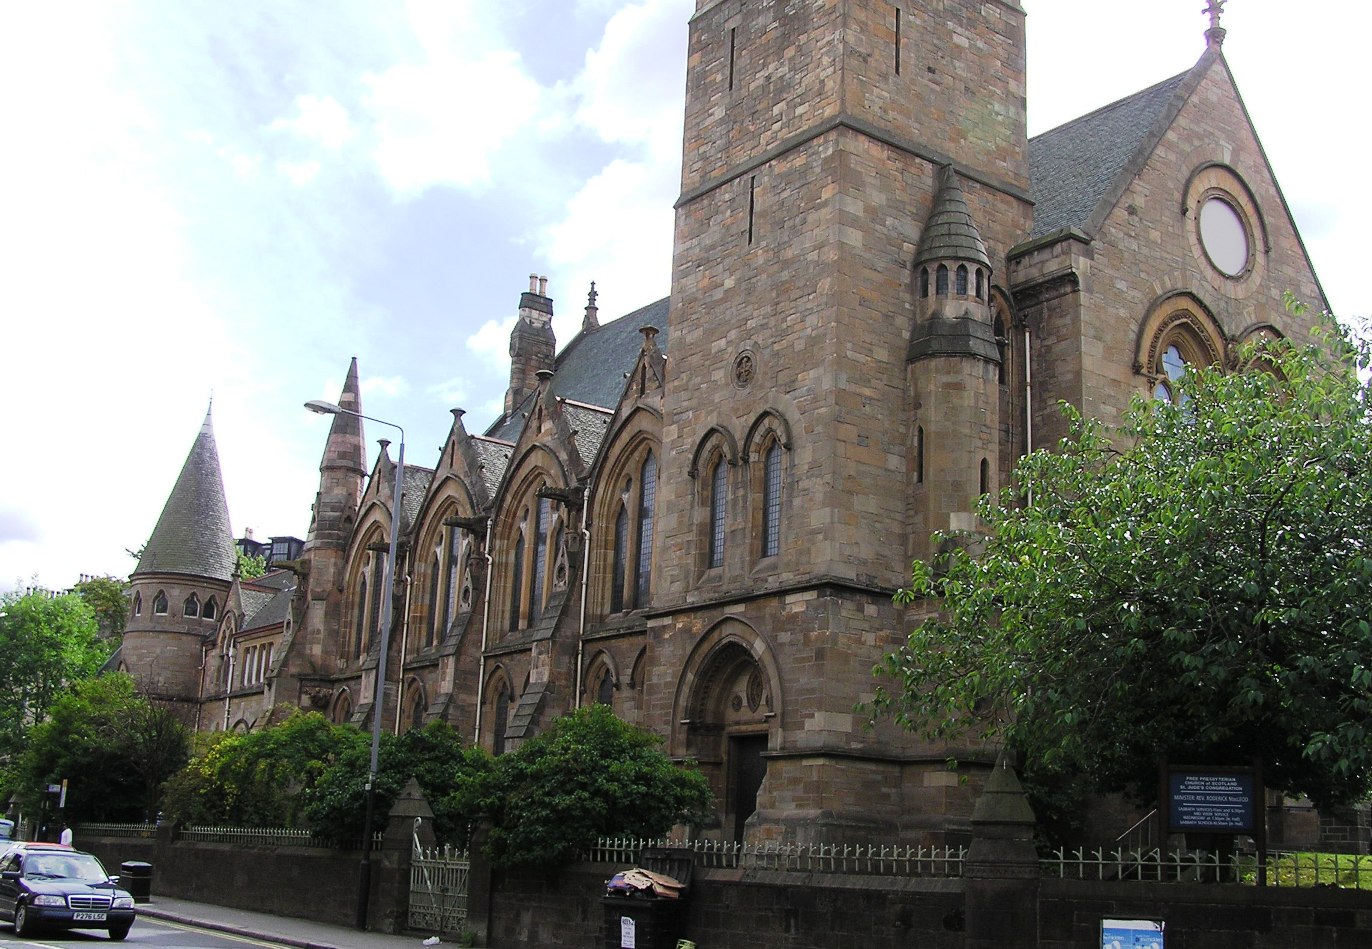 Пресвитерианская церковь Шотландии дала зеленый свет служителям-геям